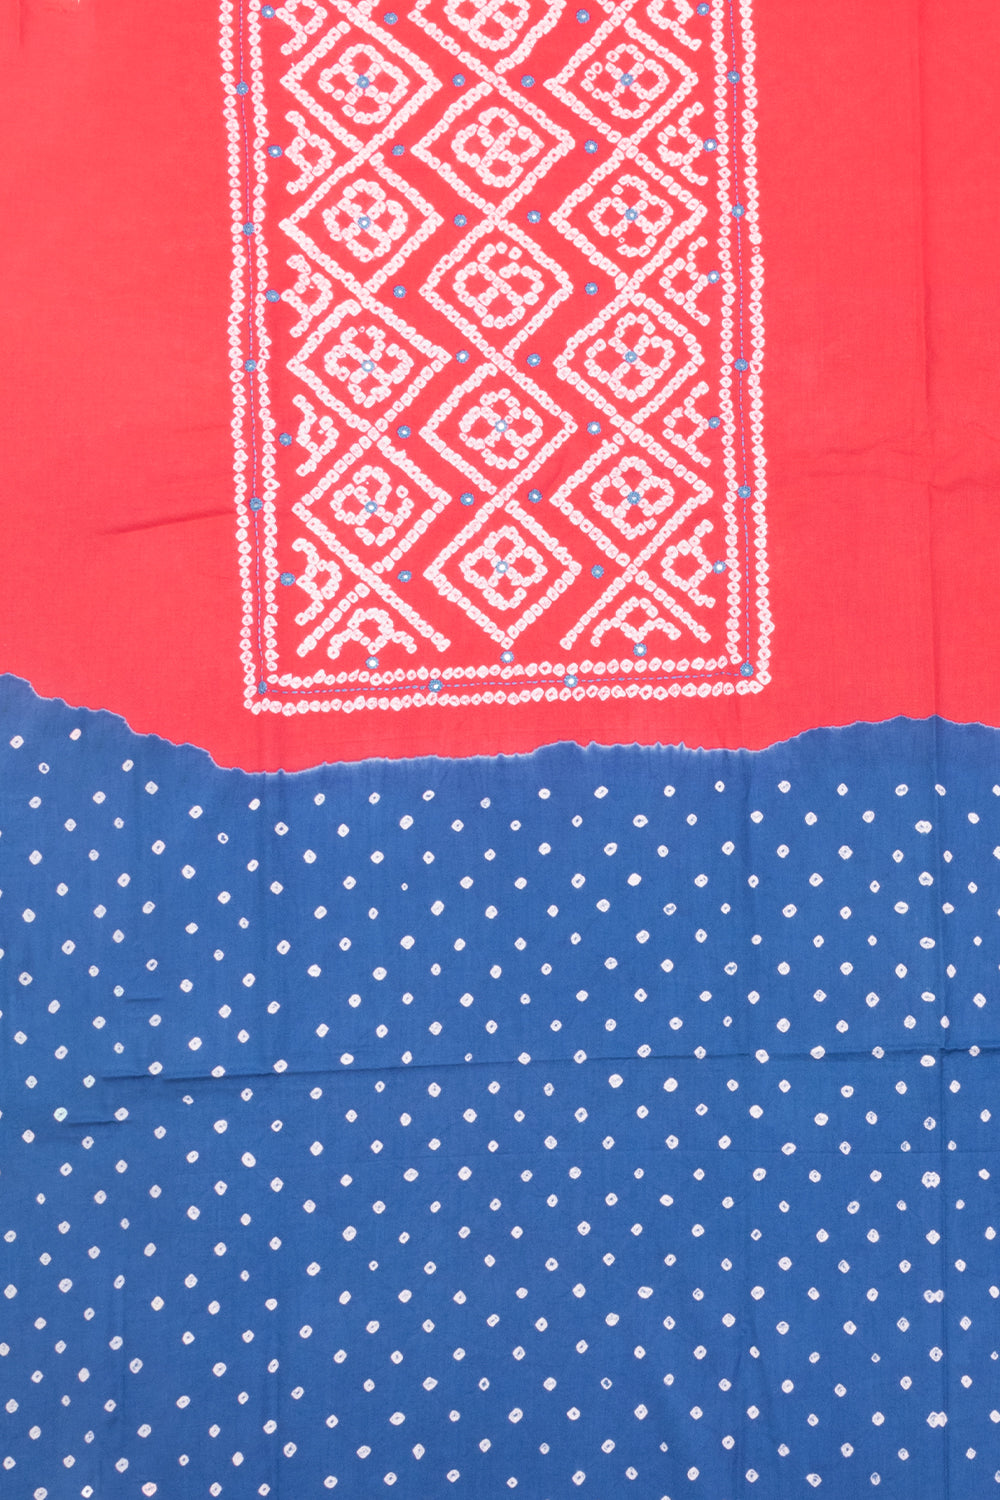 Red Bandhani Cotton 2-Piece Salwar Suit Material -Avishya